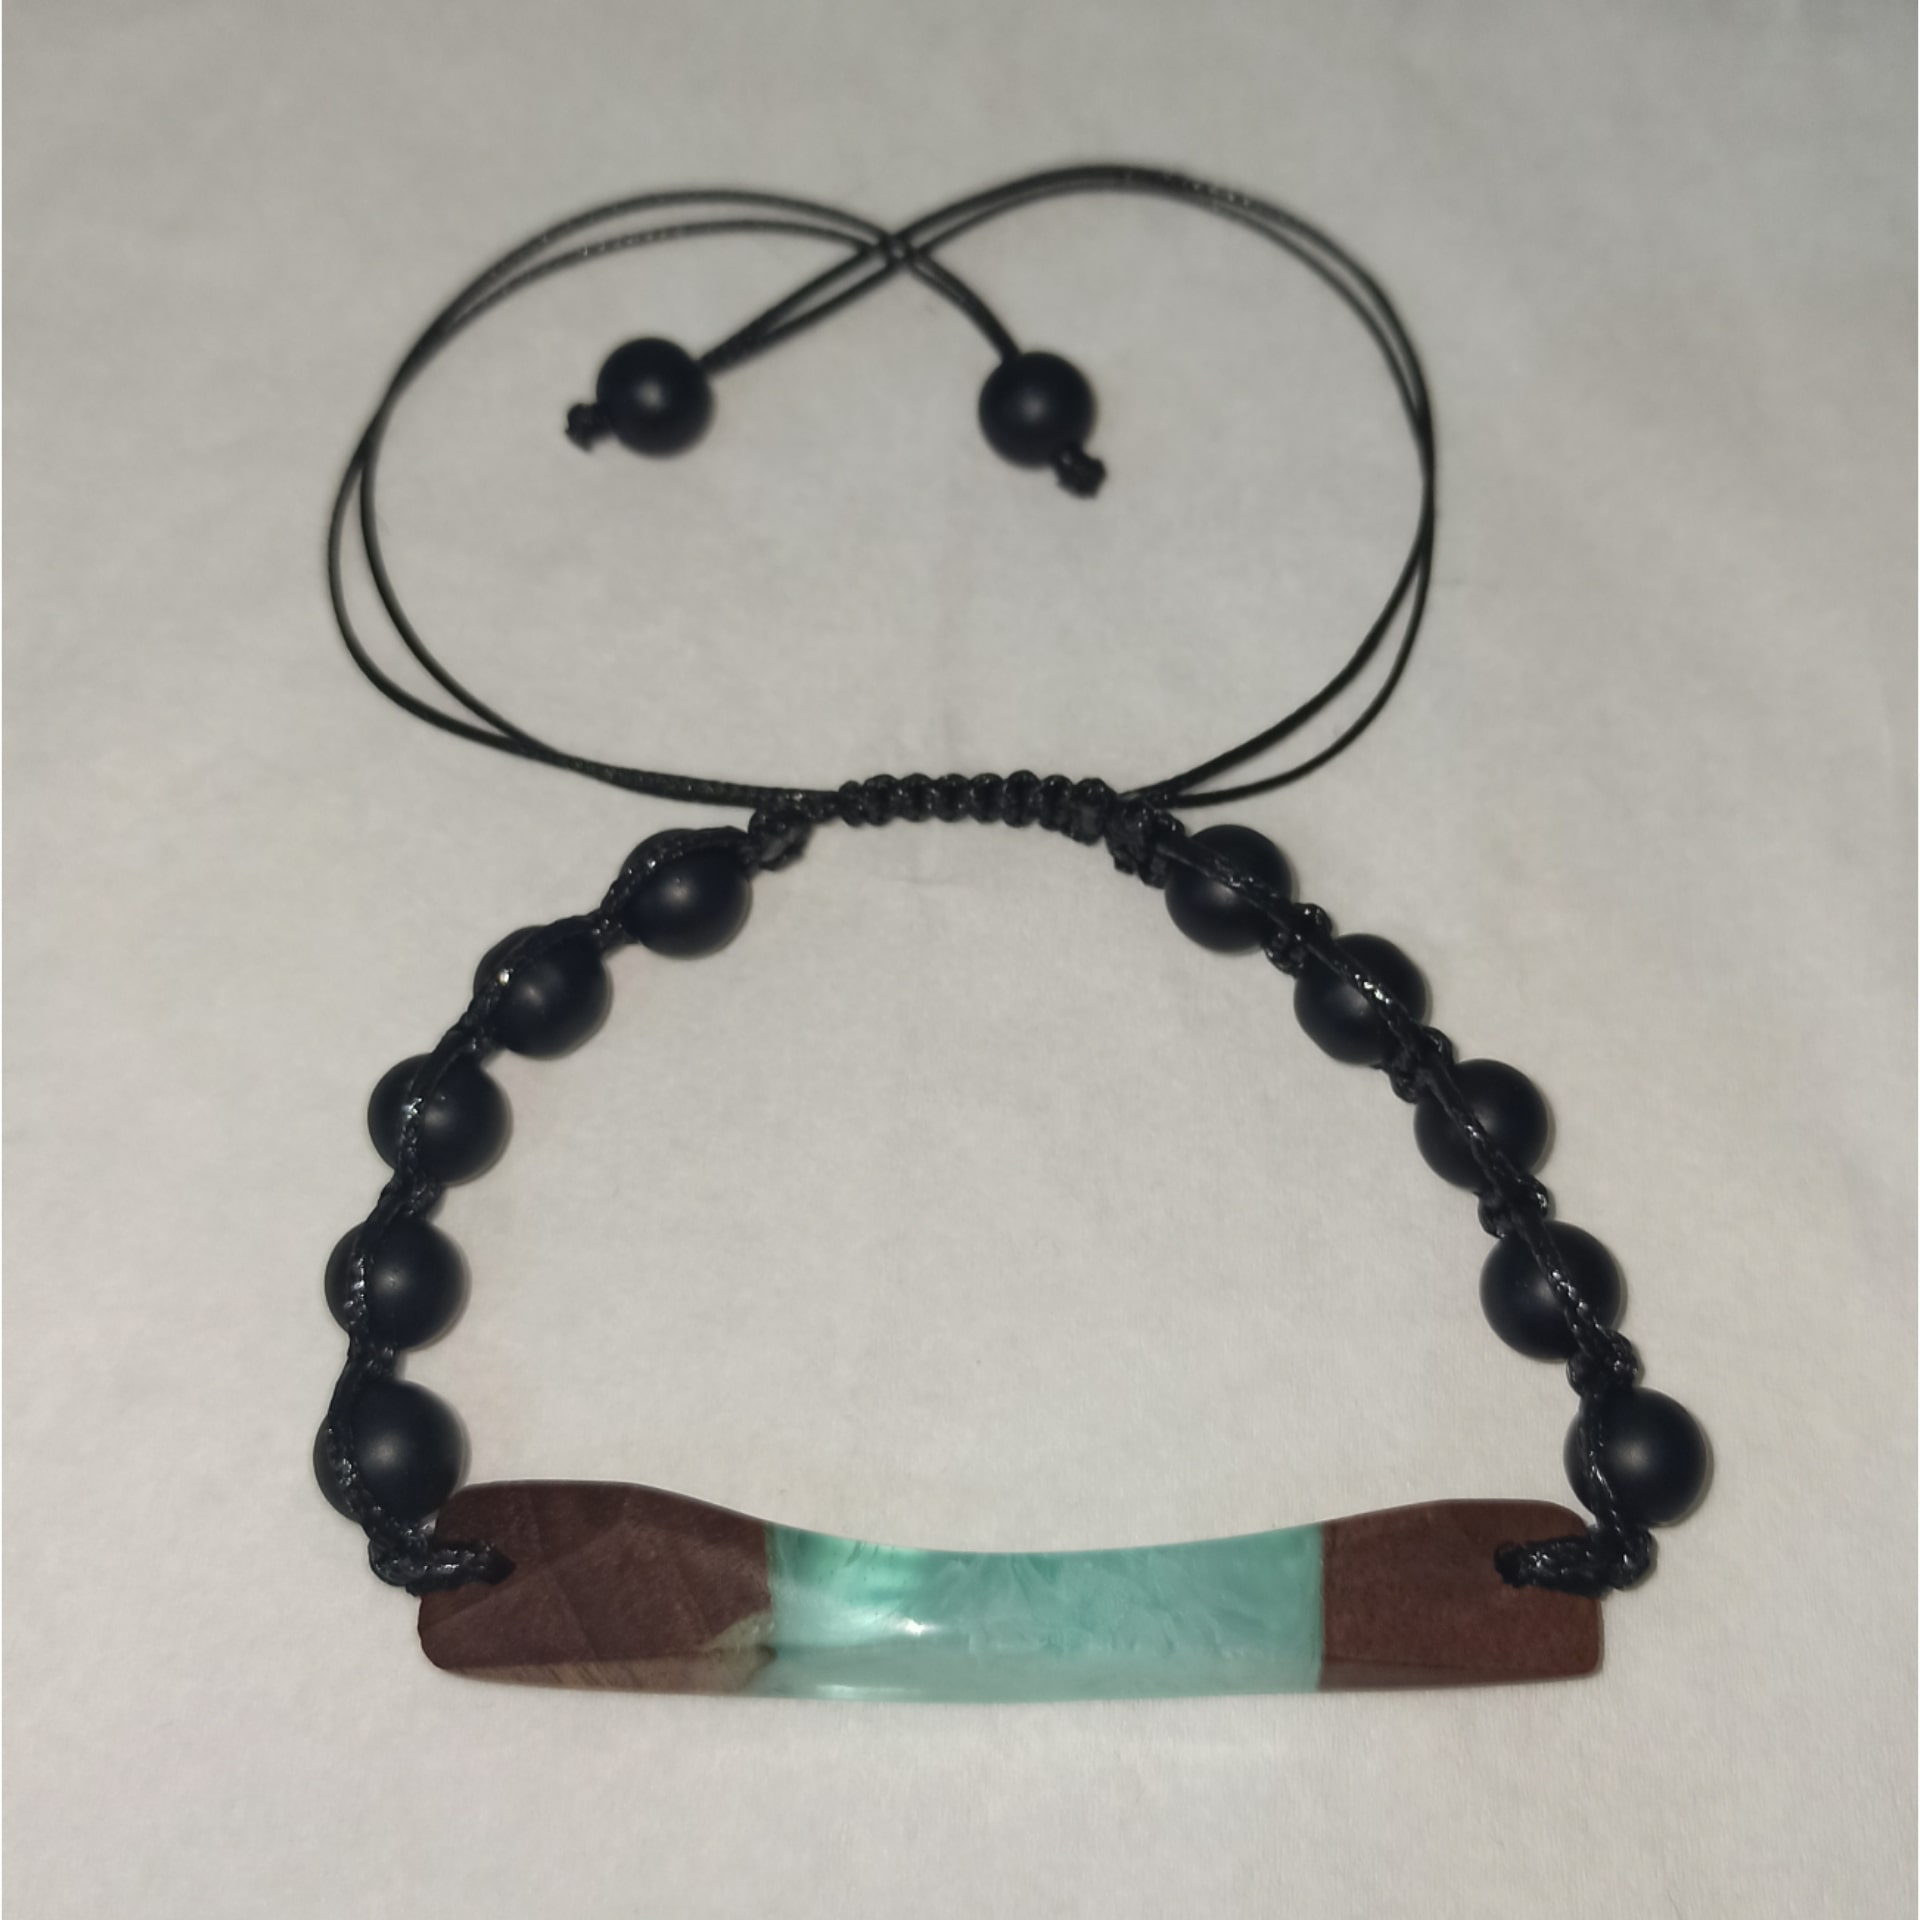 دستبند مردانه چوب و رزین با مهره های اونیکس